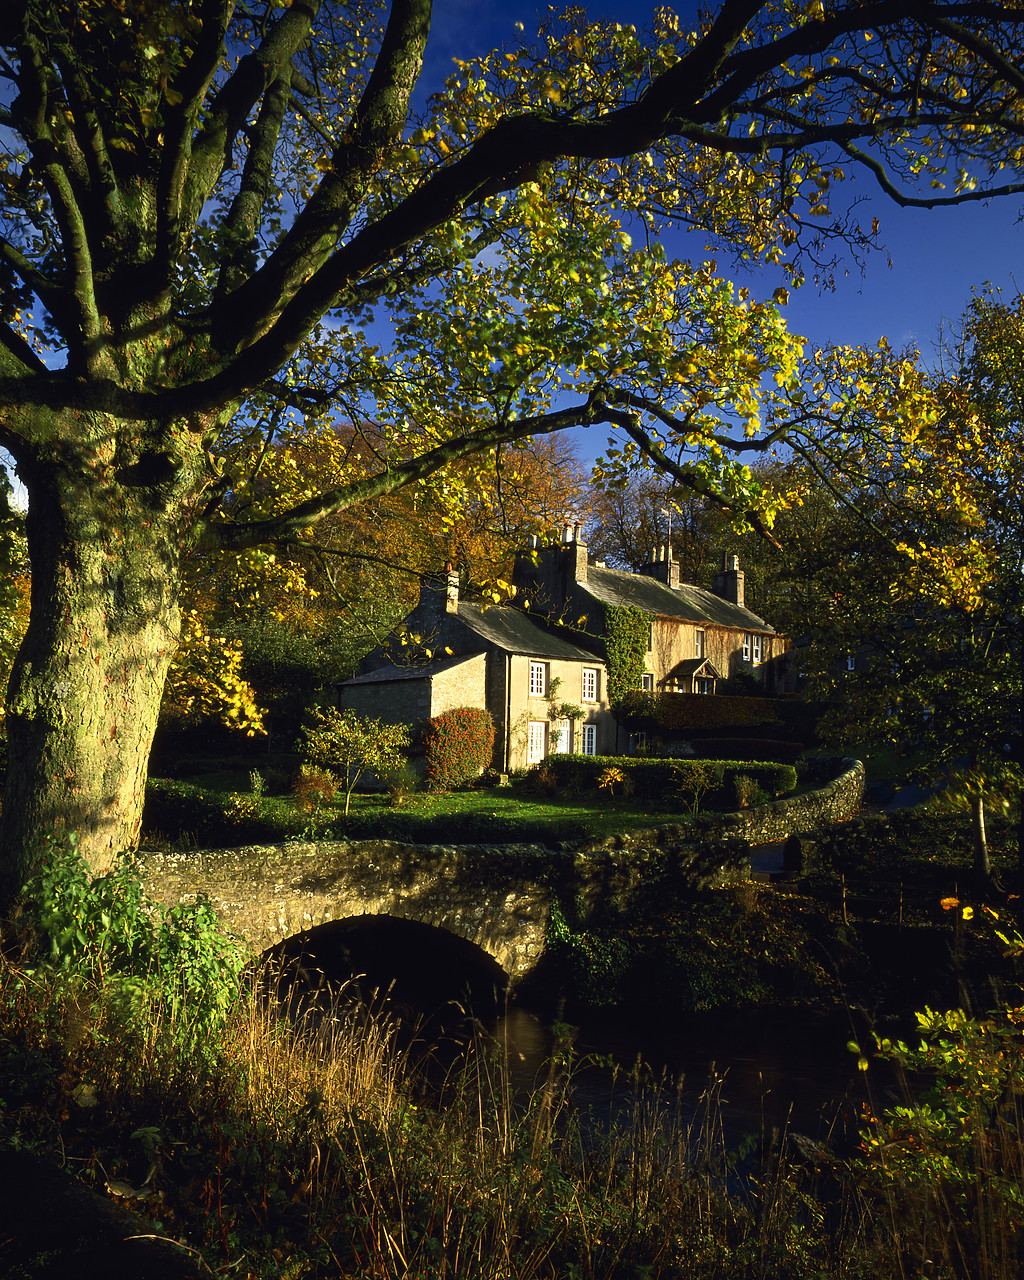 #892505-4 - Stone Bridge & Cottages, Clapham, Yorkshire, England